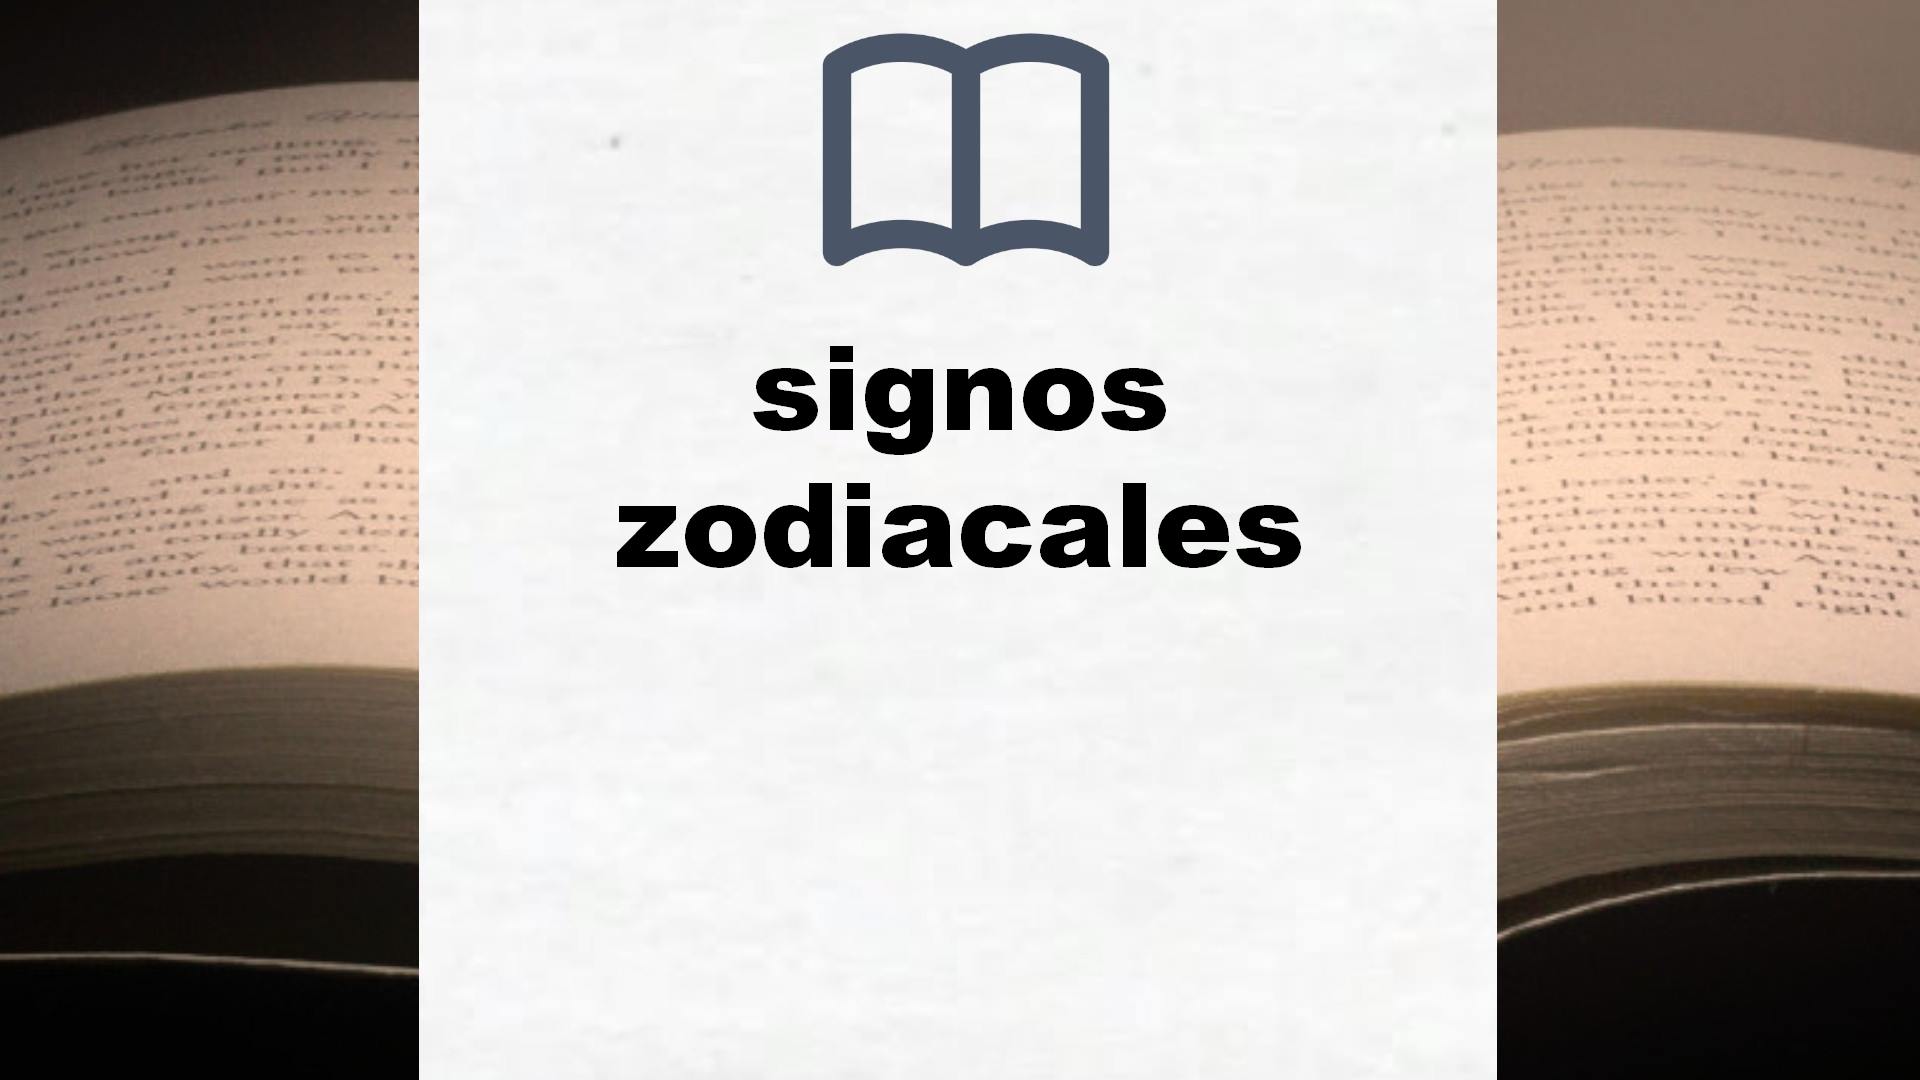 Libros sobre signos zodiacales